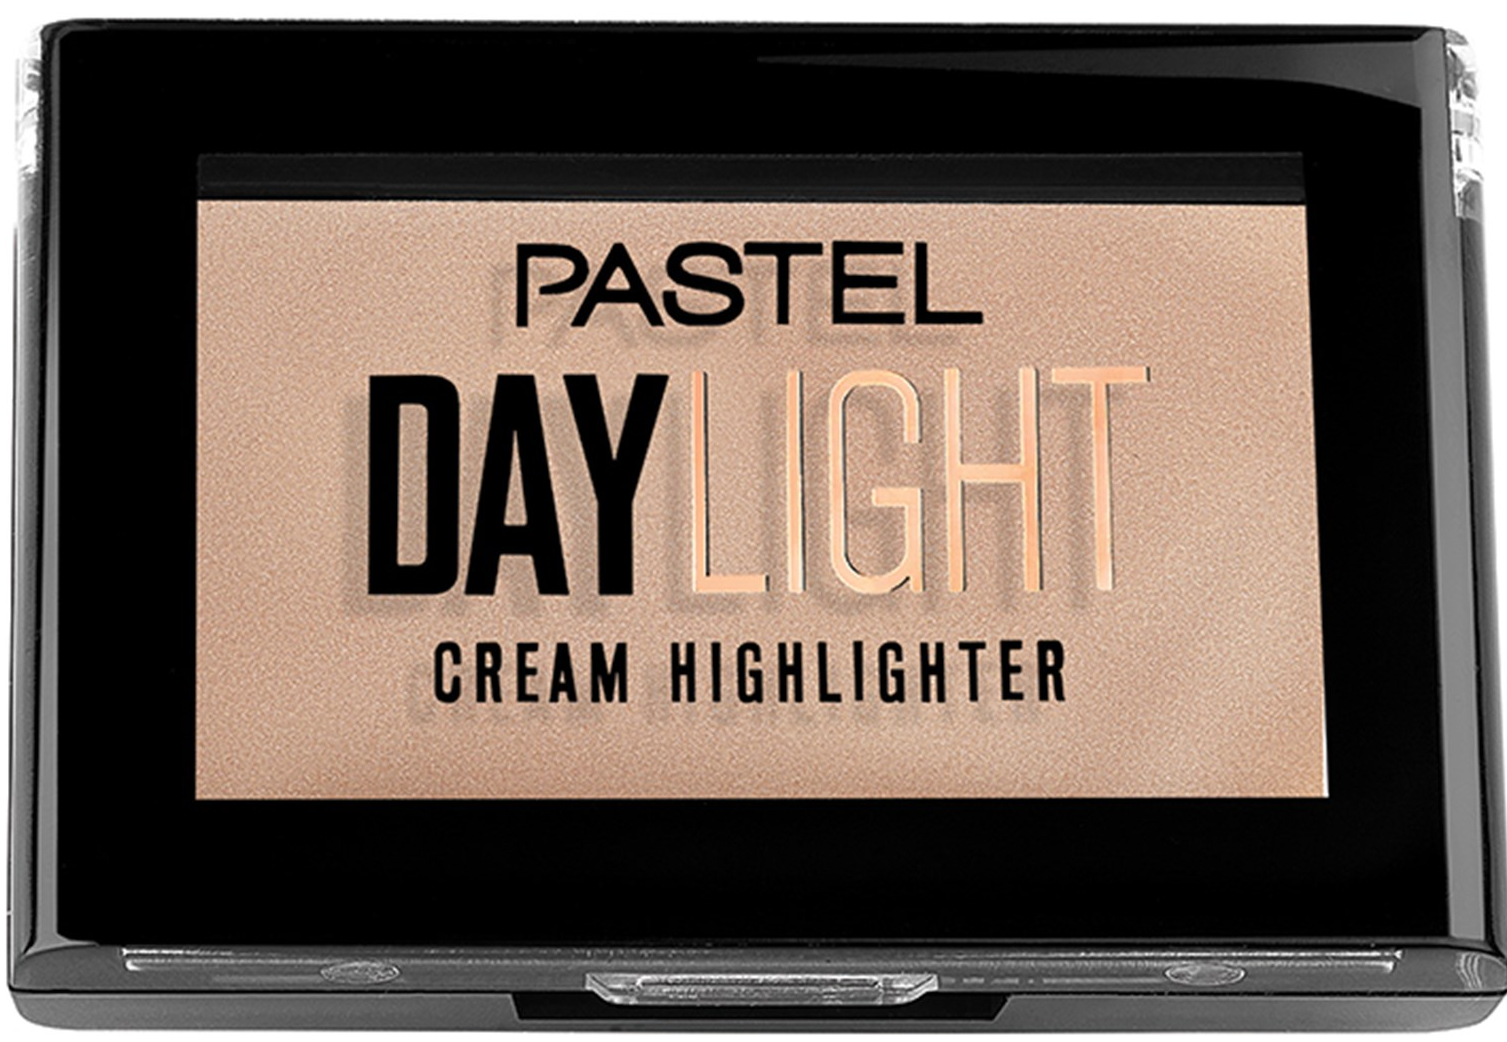 Хайлайтер PASTEL кремовый Daylight Cream Highlighter, 11 Sunrise как справиться с тревогой практическое пошаговое руководство для подростков дженкинс омар г